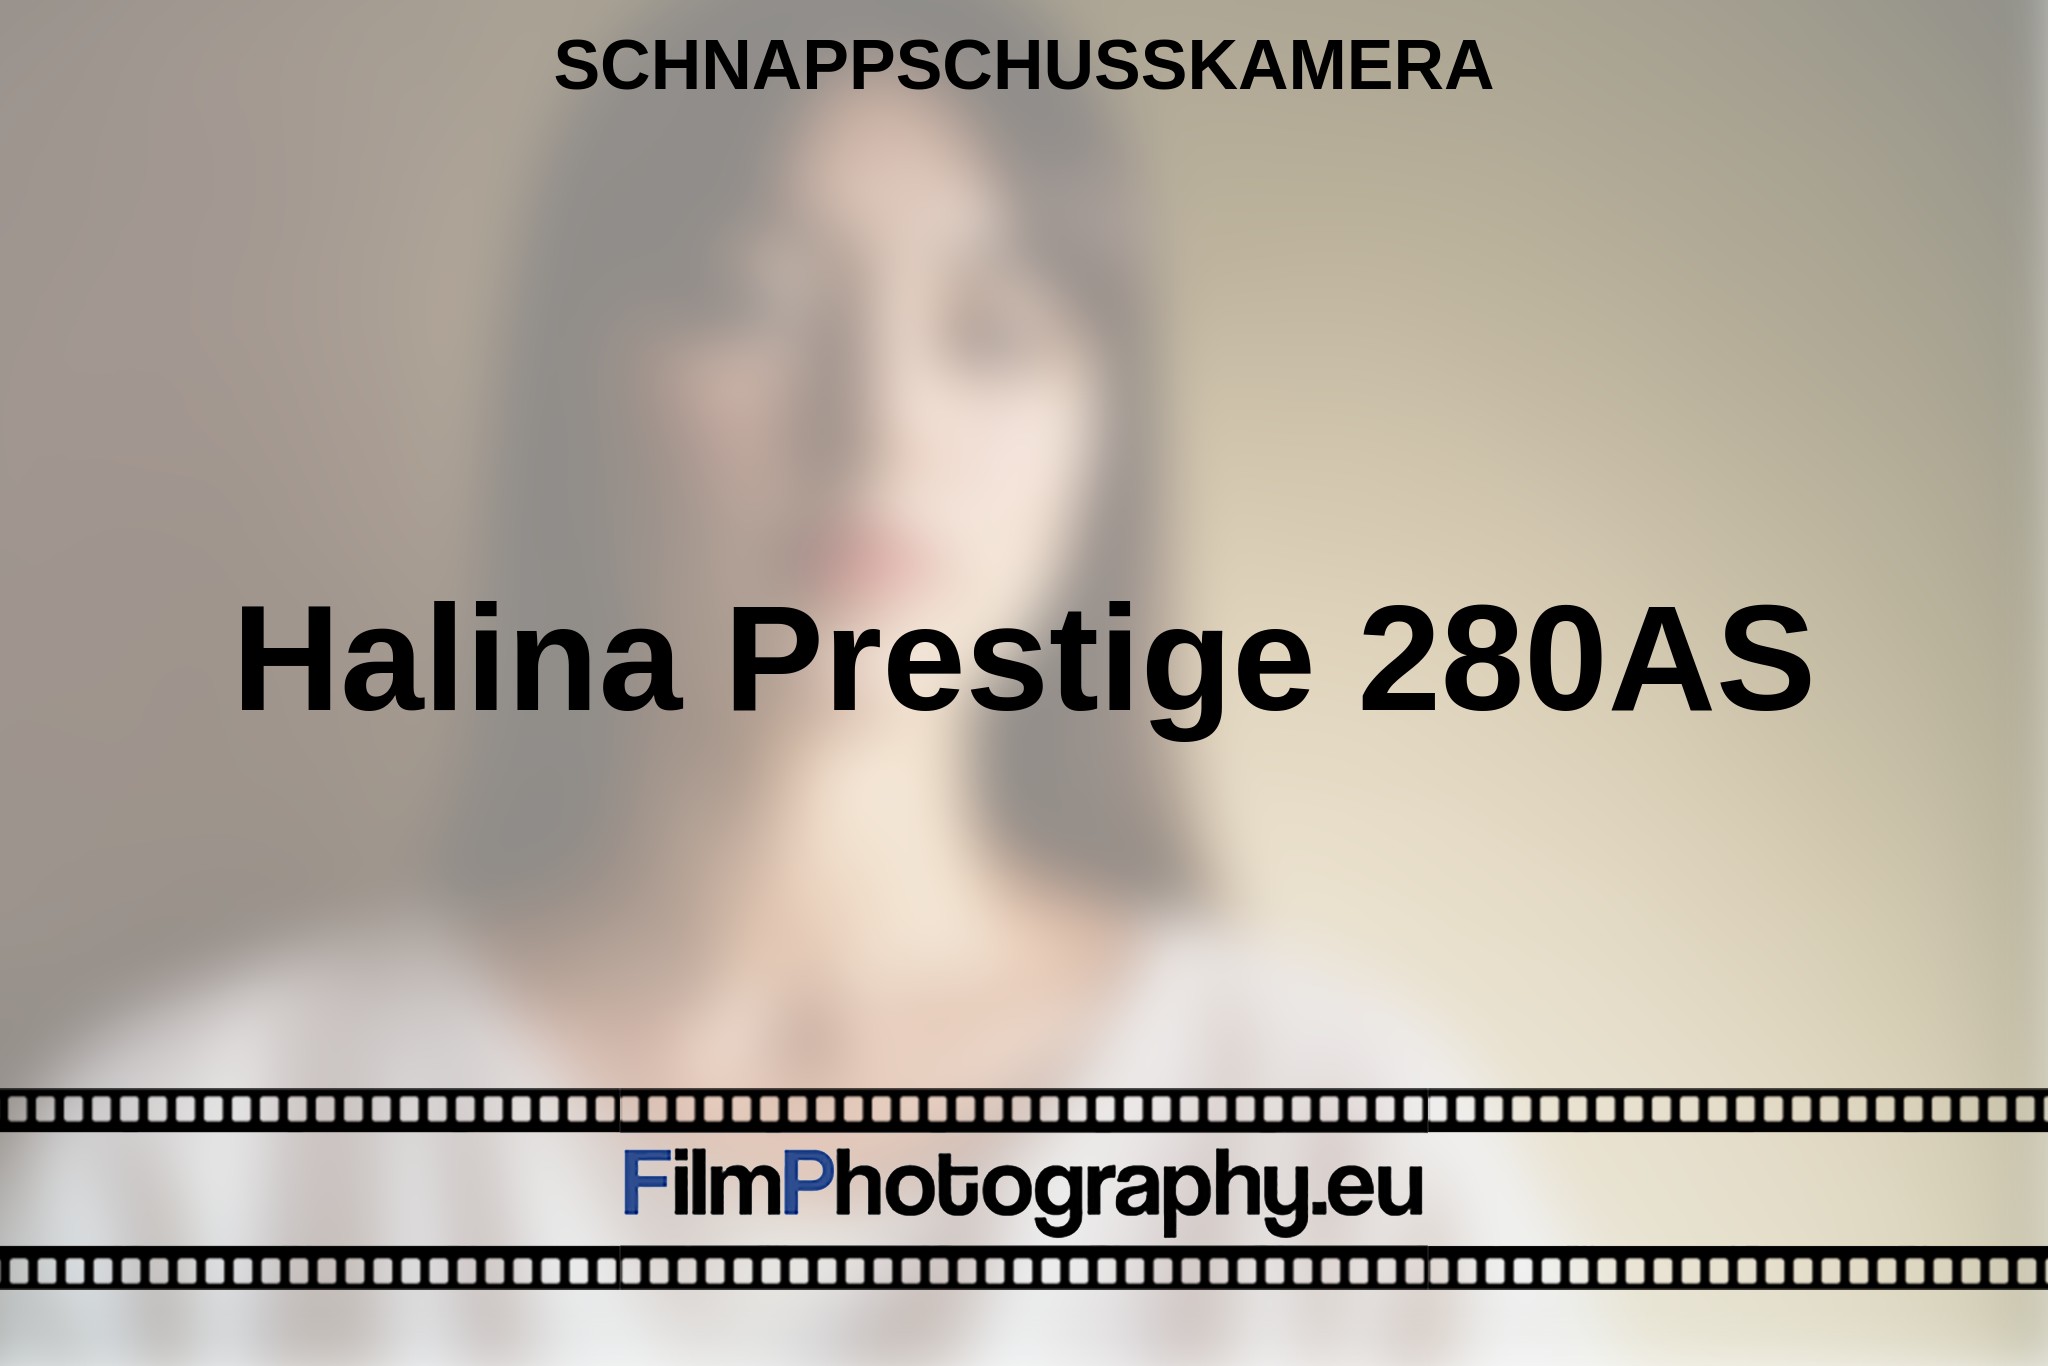 halina-prestige-280as-schnappschusskamera-bnv.jpg